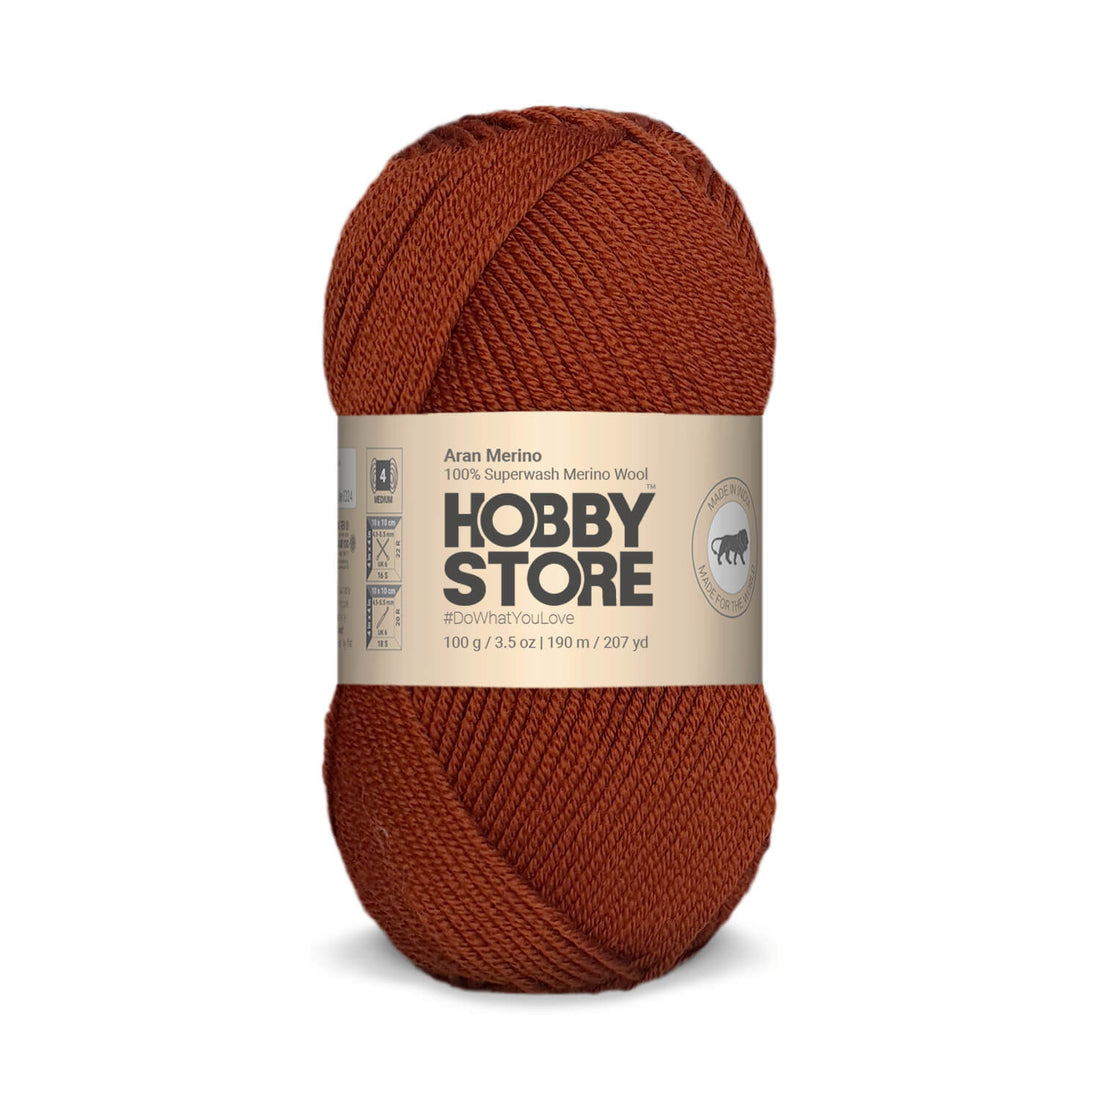 Aran Merino Wool by Hobby Store - Brick Red AM014